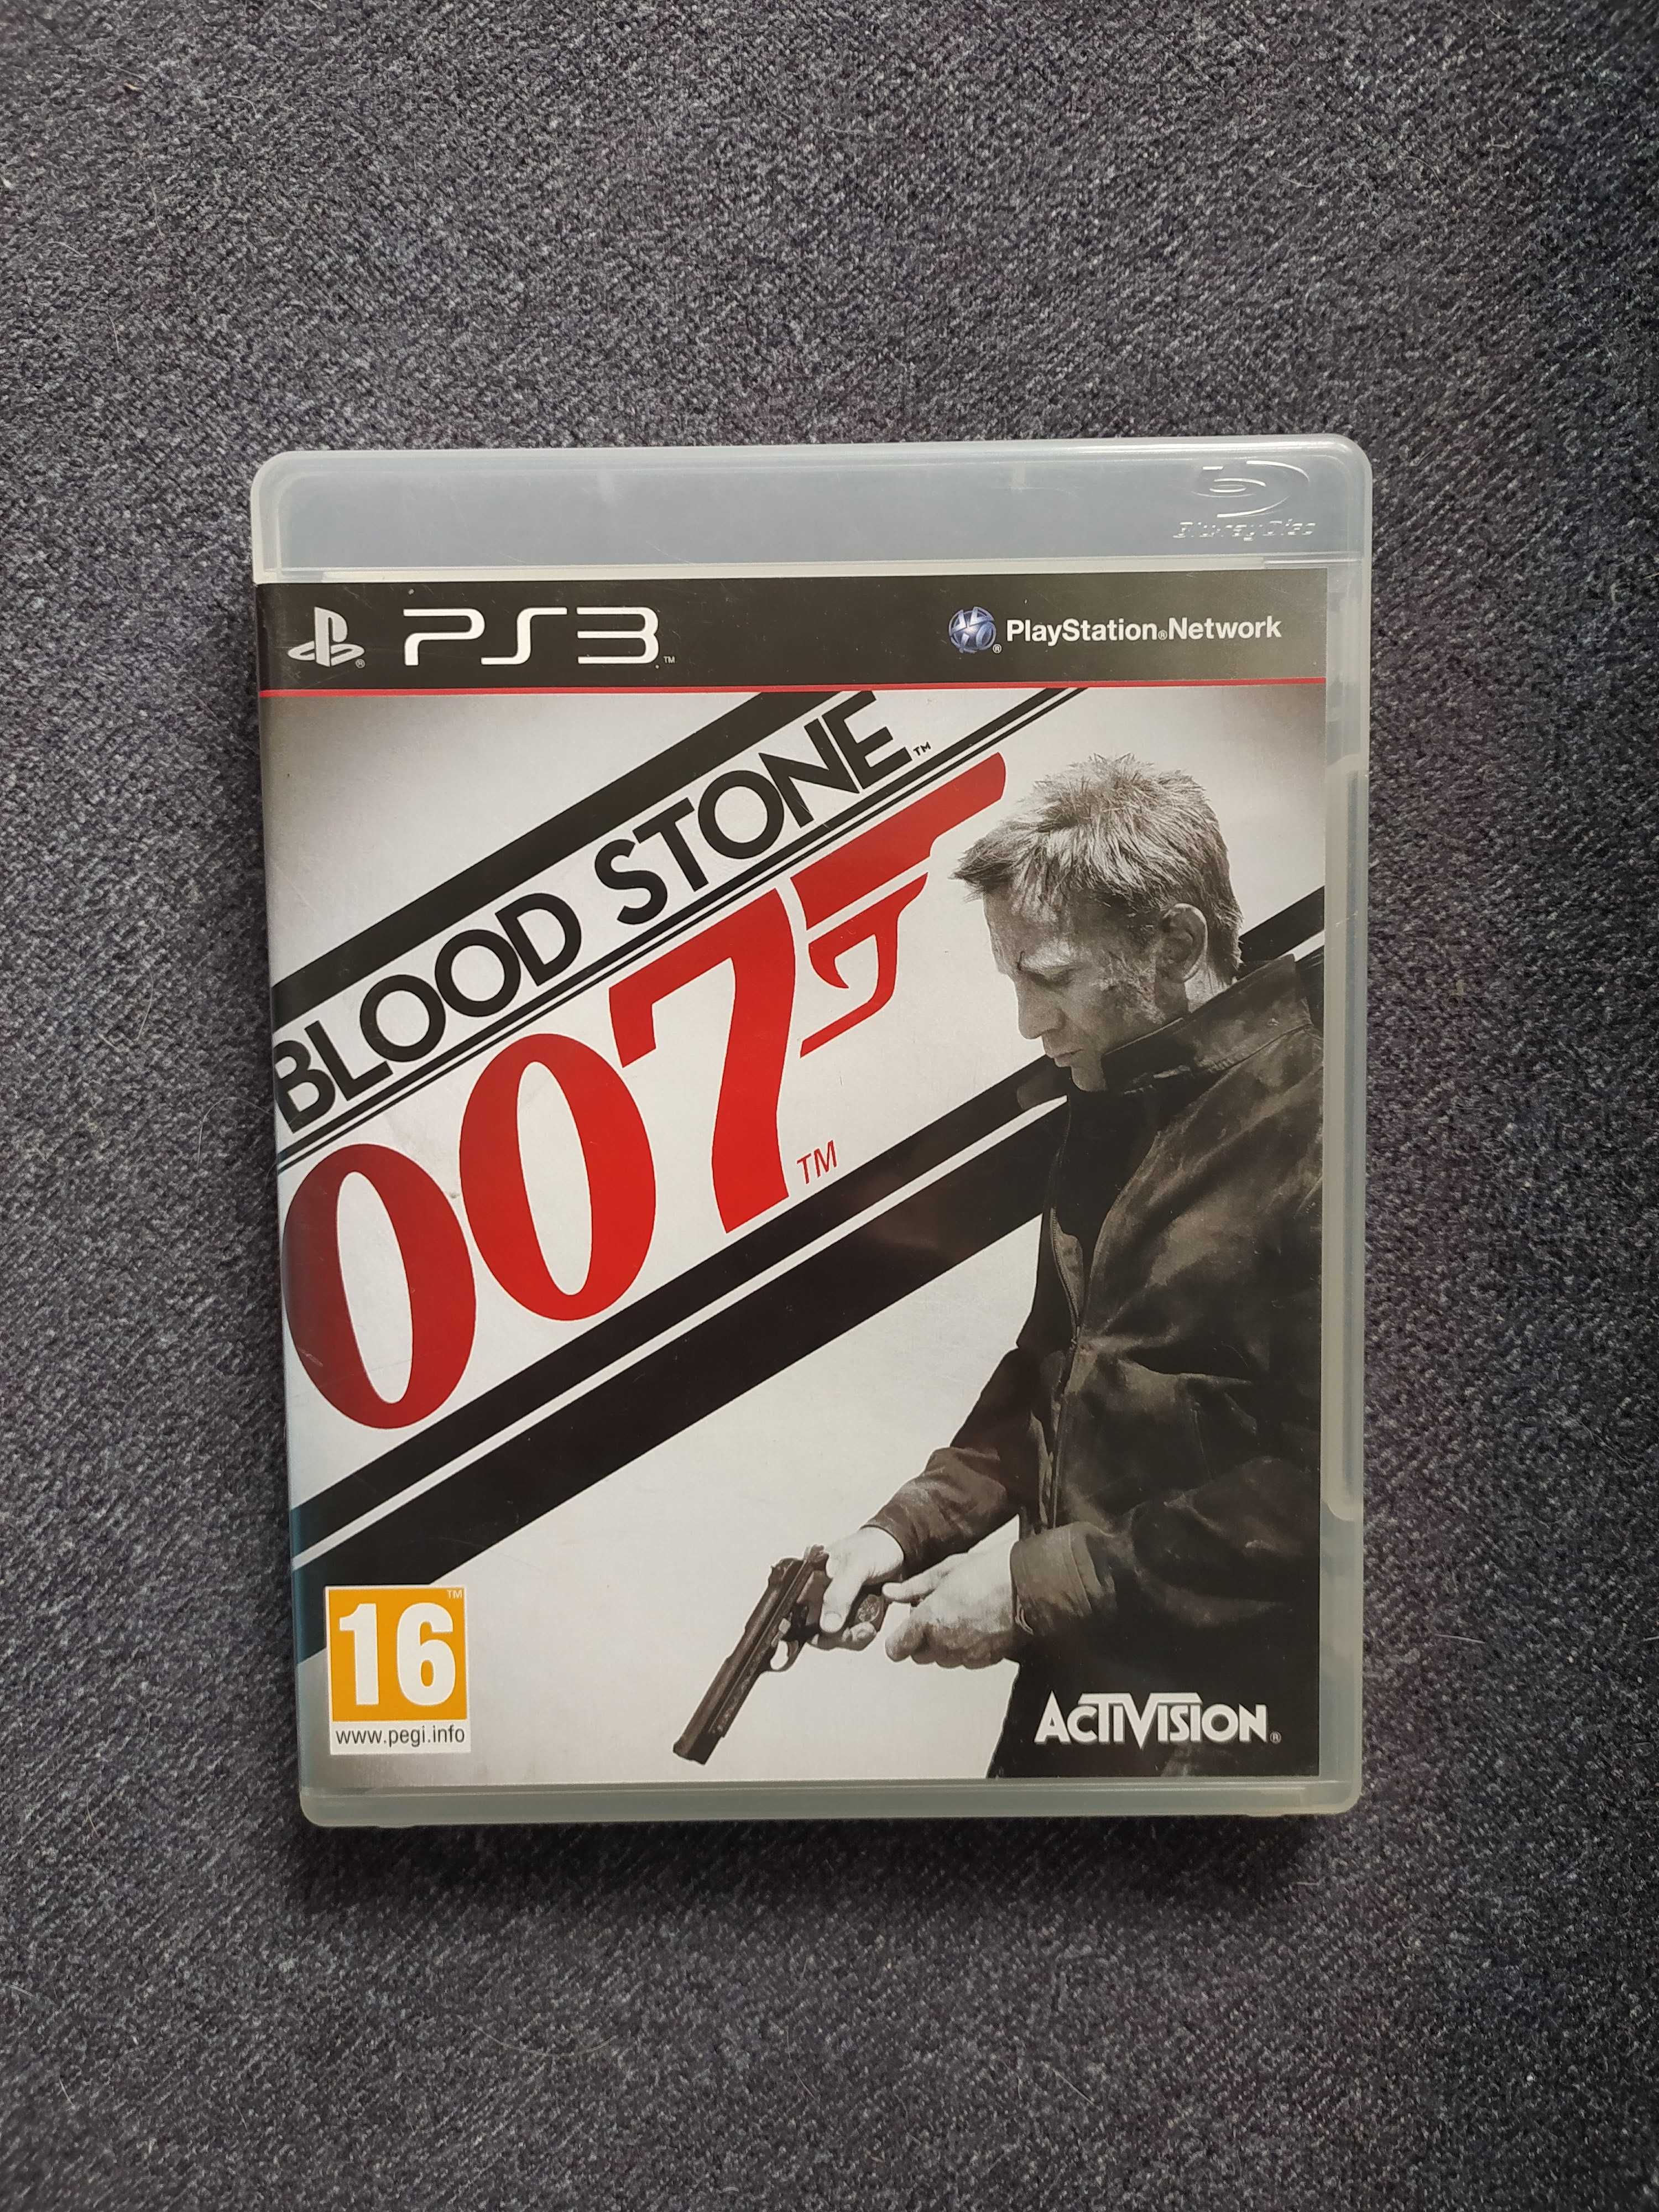 Blood stone 007 na PS3